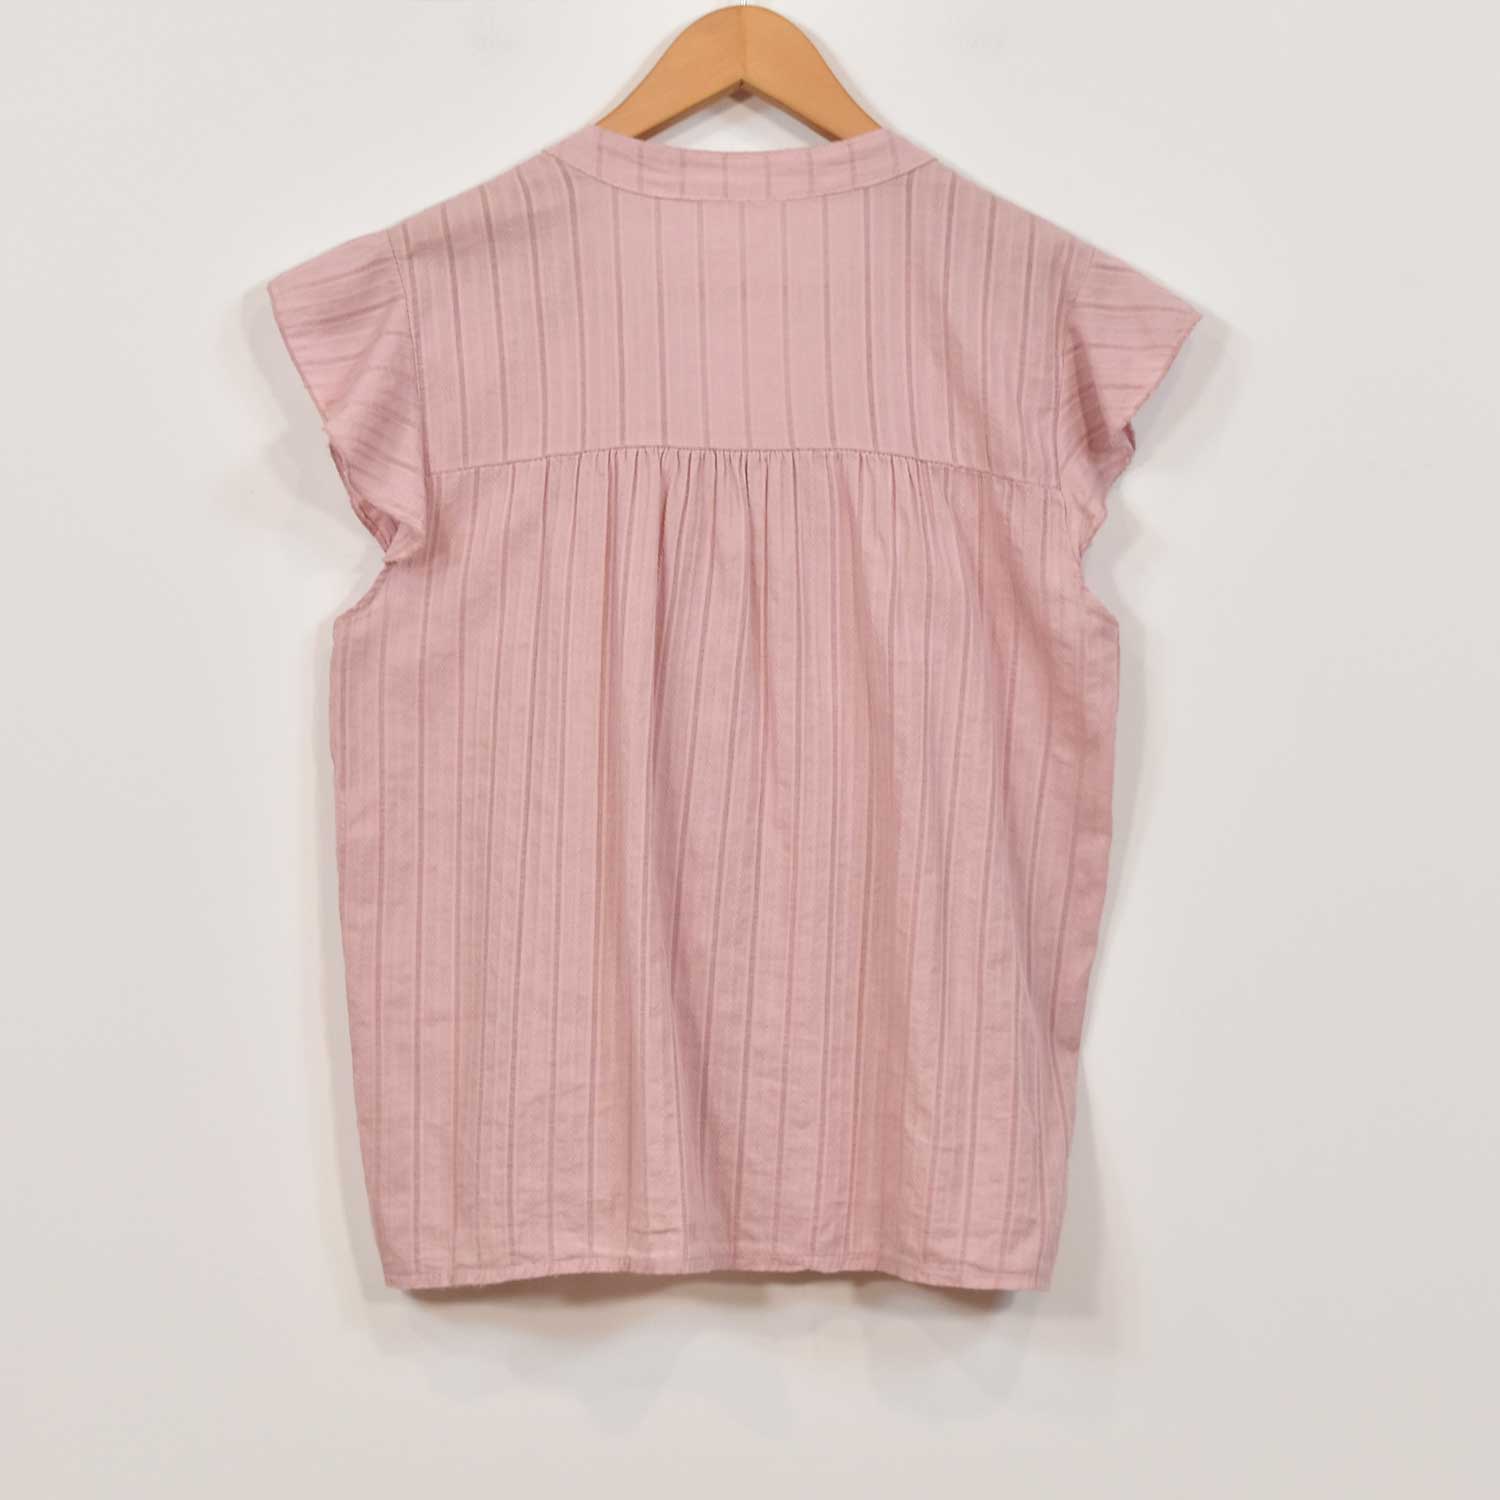 Pink ruffle texture shirt